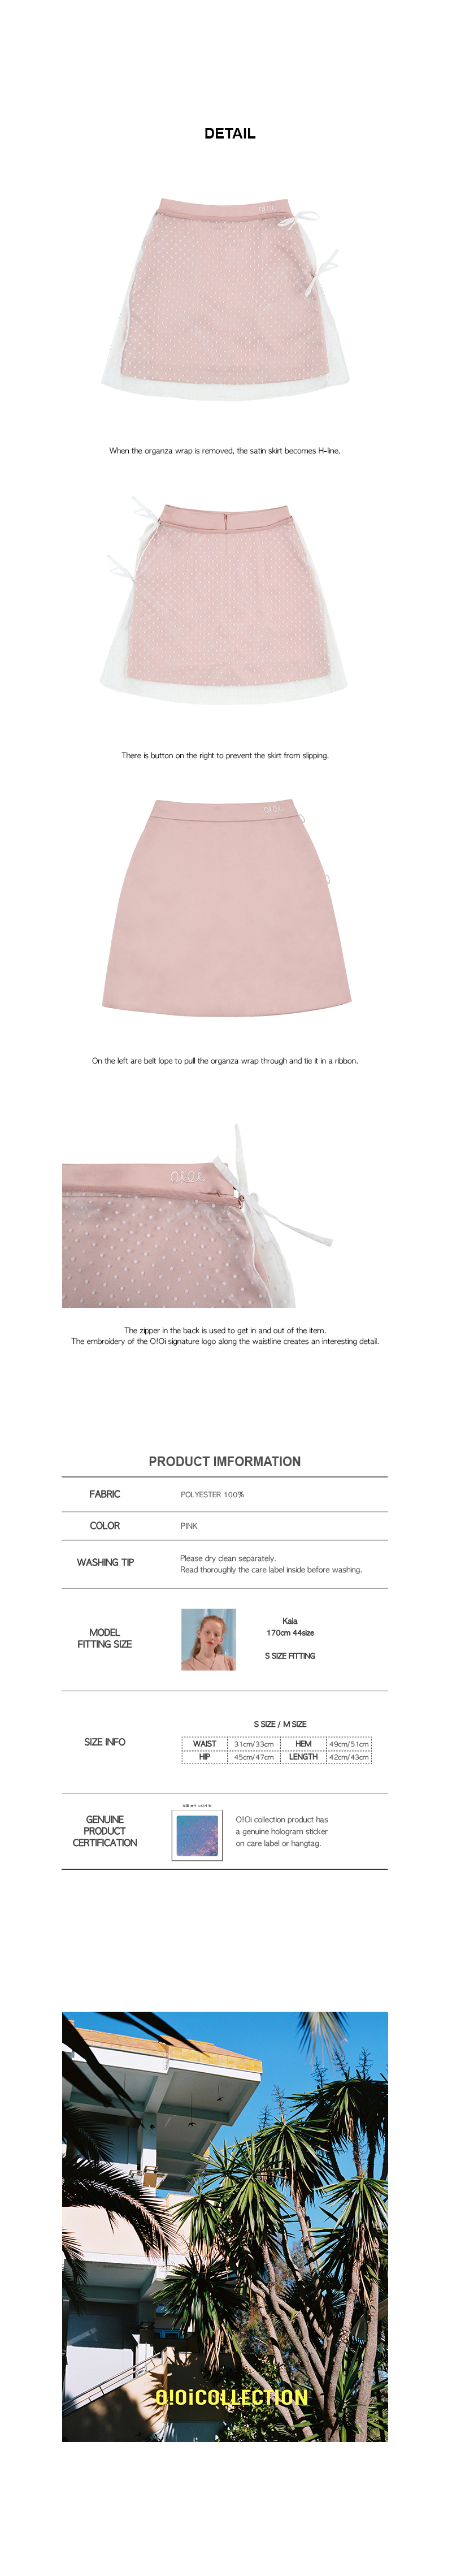 ドットオーガンジーラップミニスカート(ピンク) | 詳細画像4